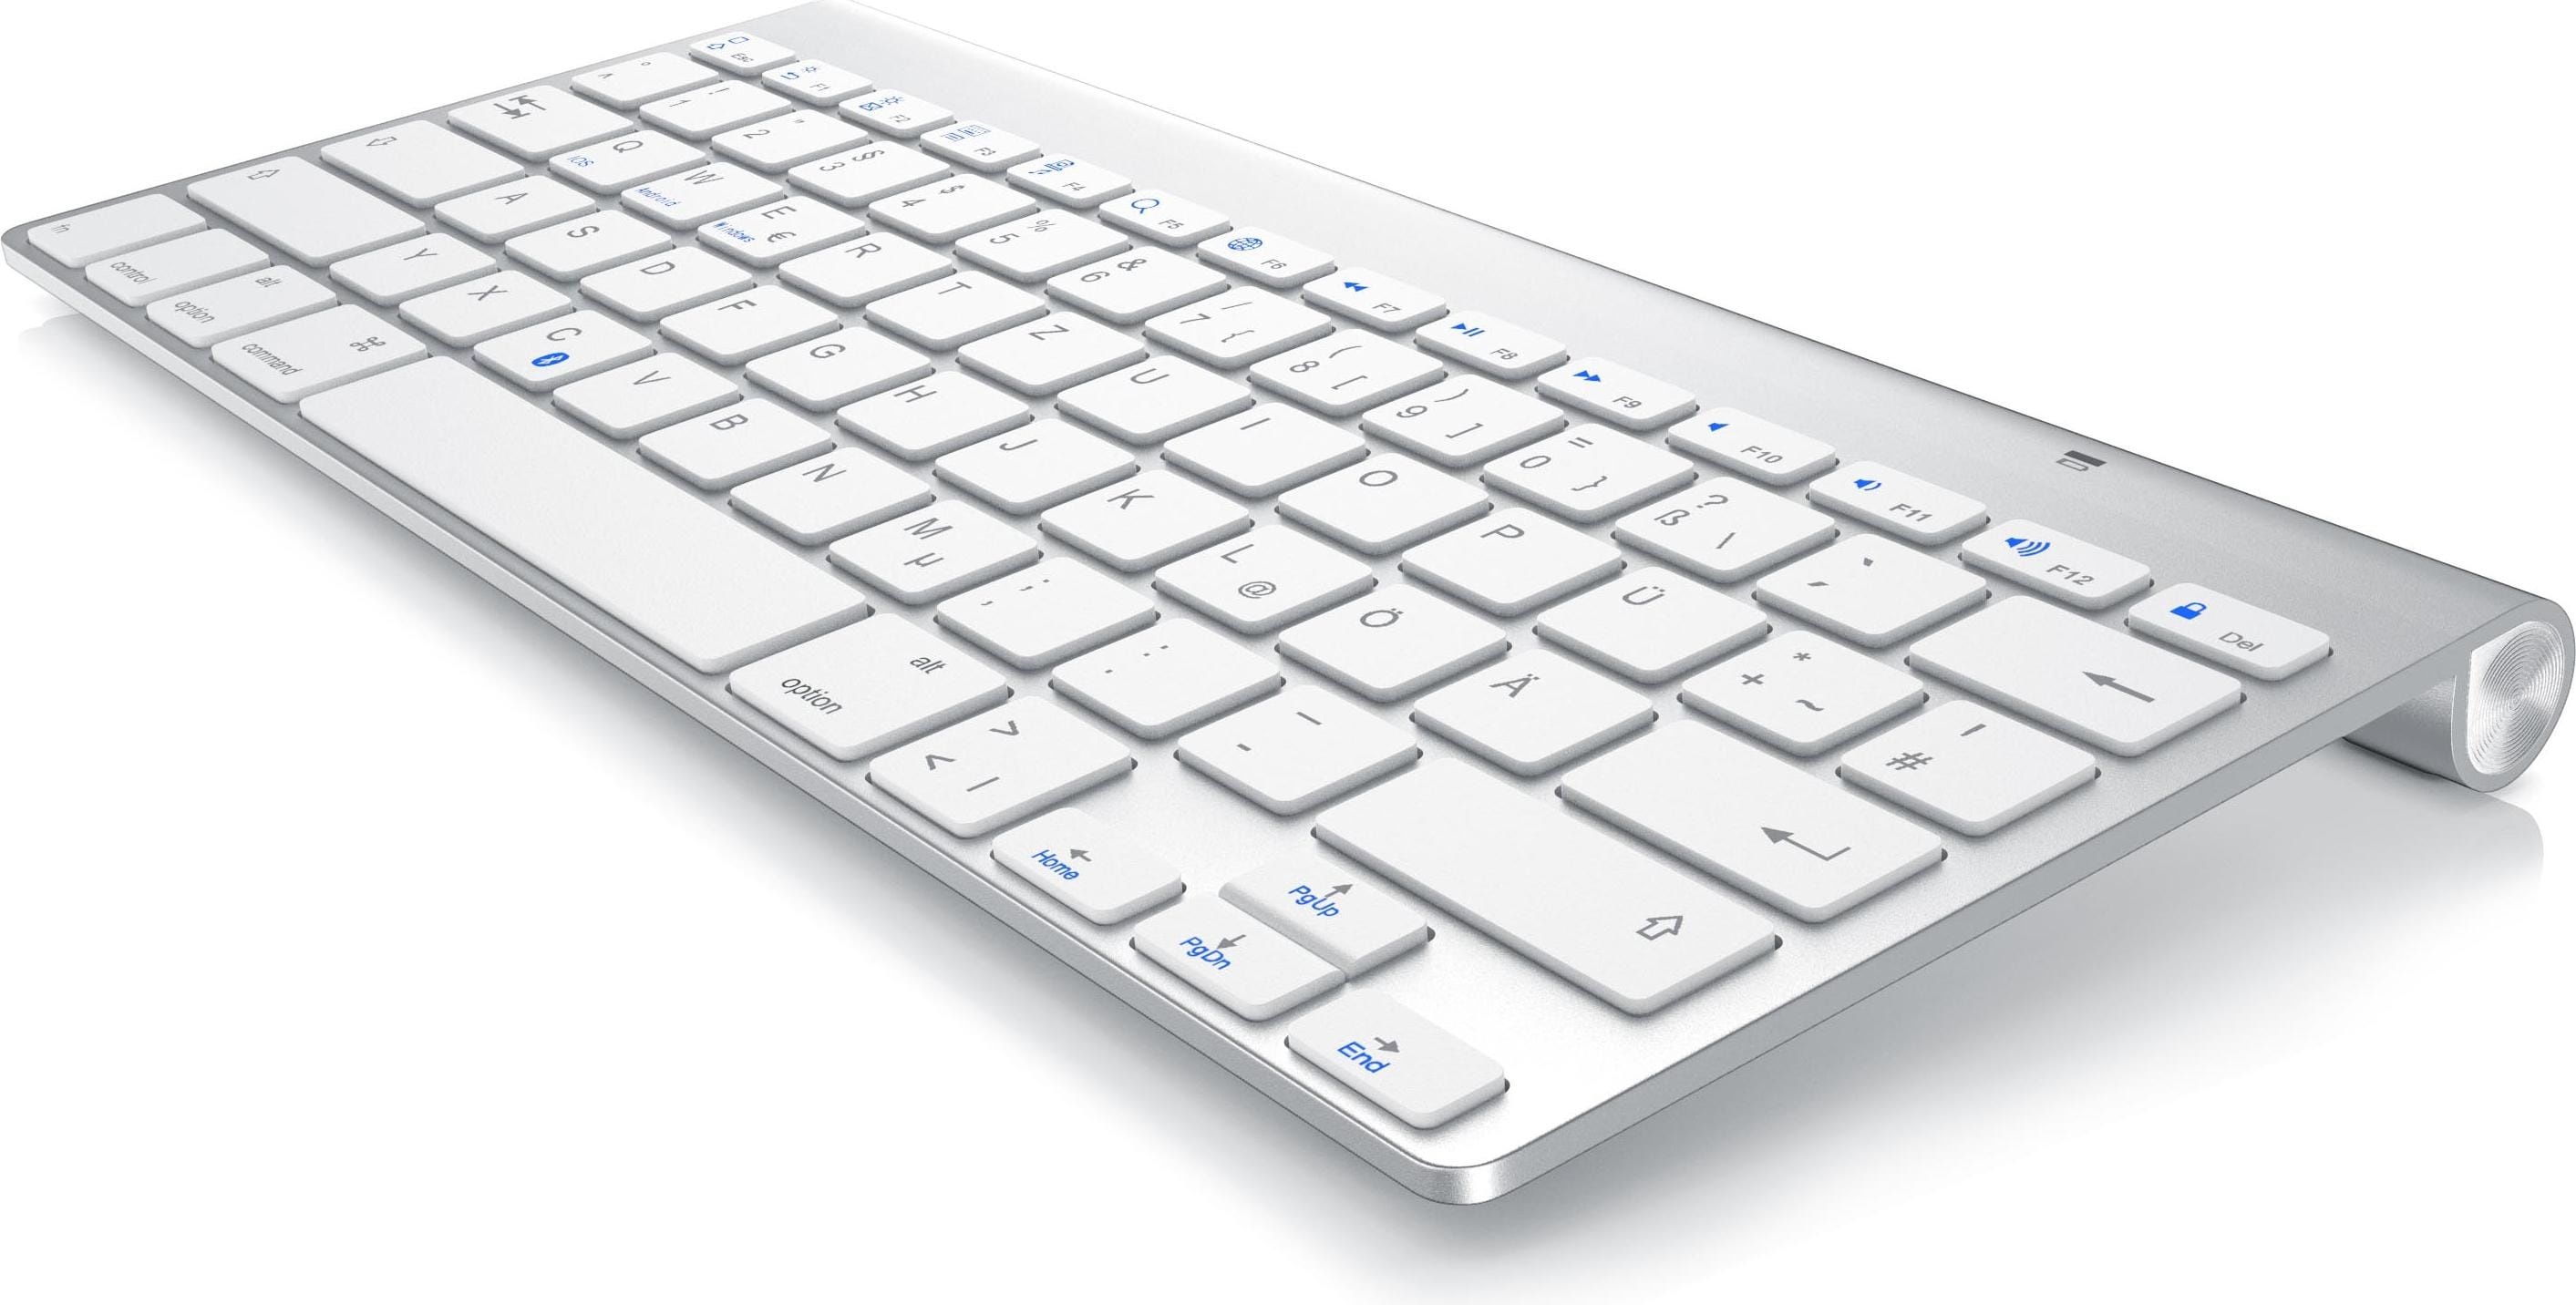 Aplic Wireless Tastatur, Bluetooth Keyboard für iOS, Android, Windows, QWERTZ Layout (DE, Kabellos), Tastatur, Silber